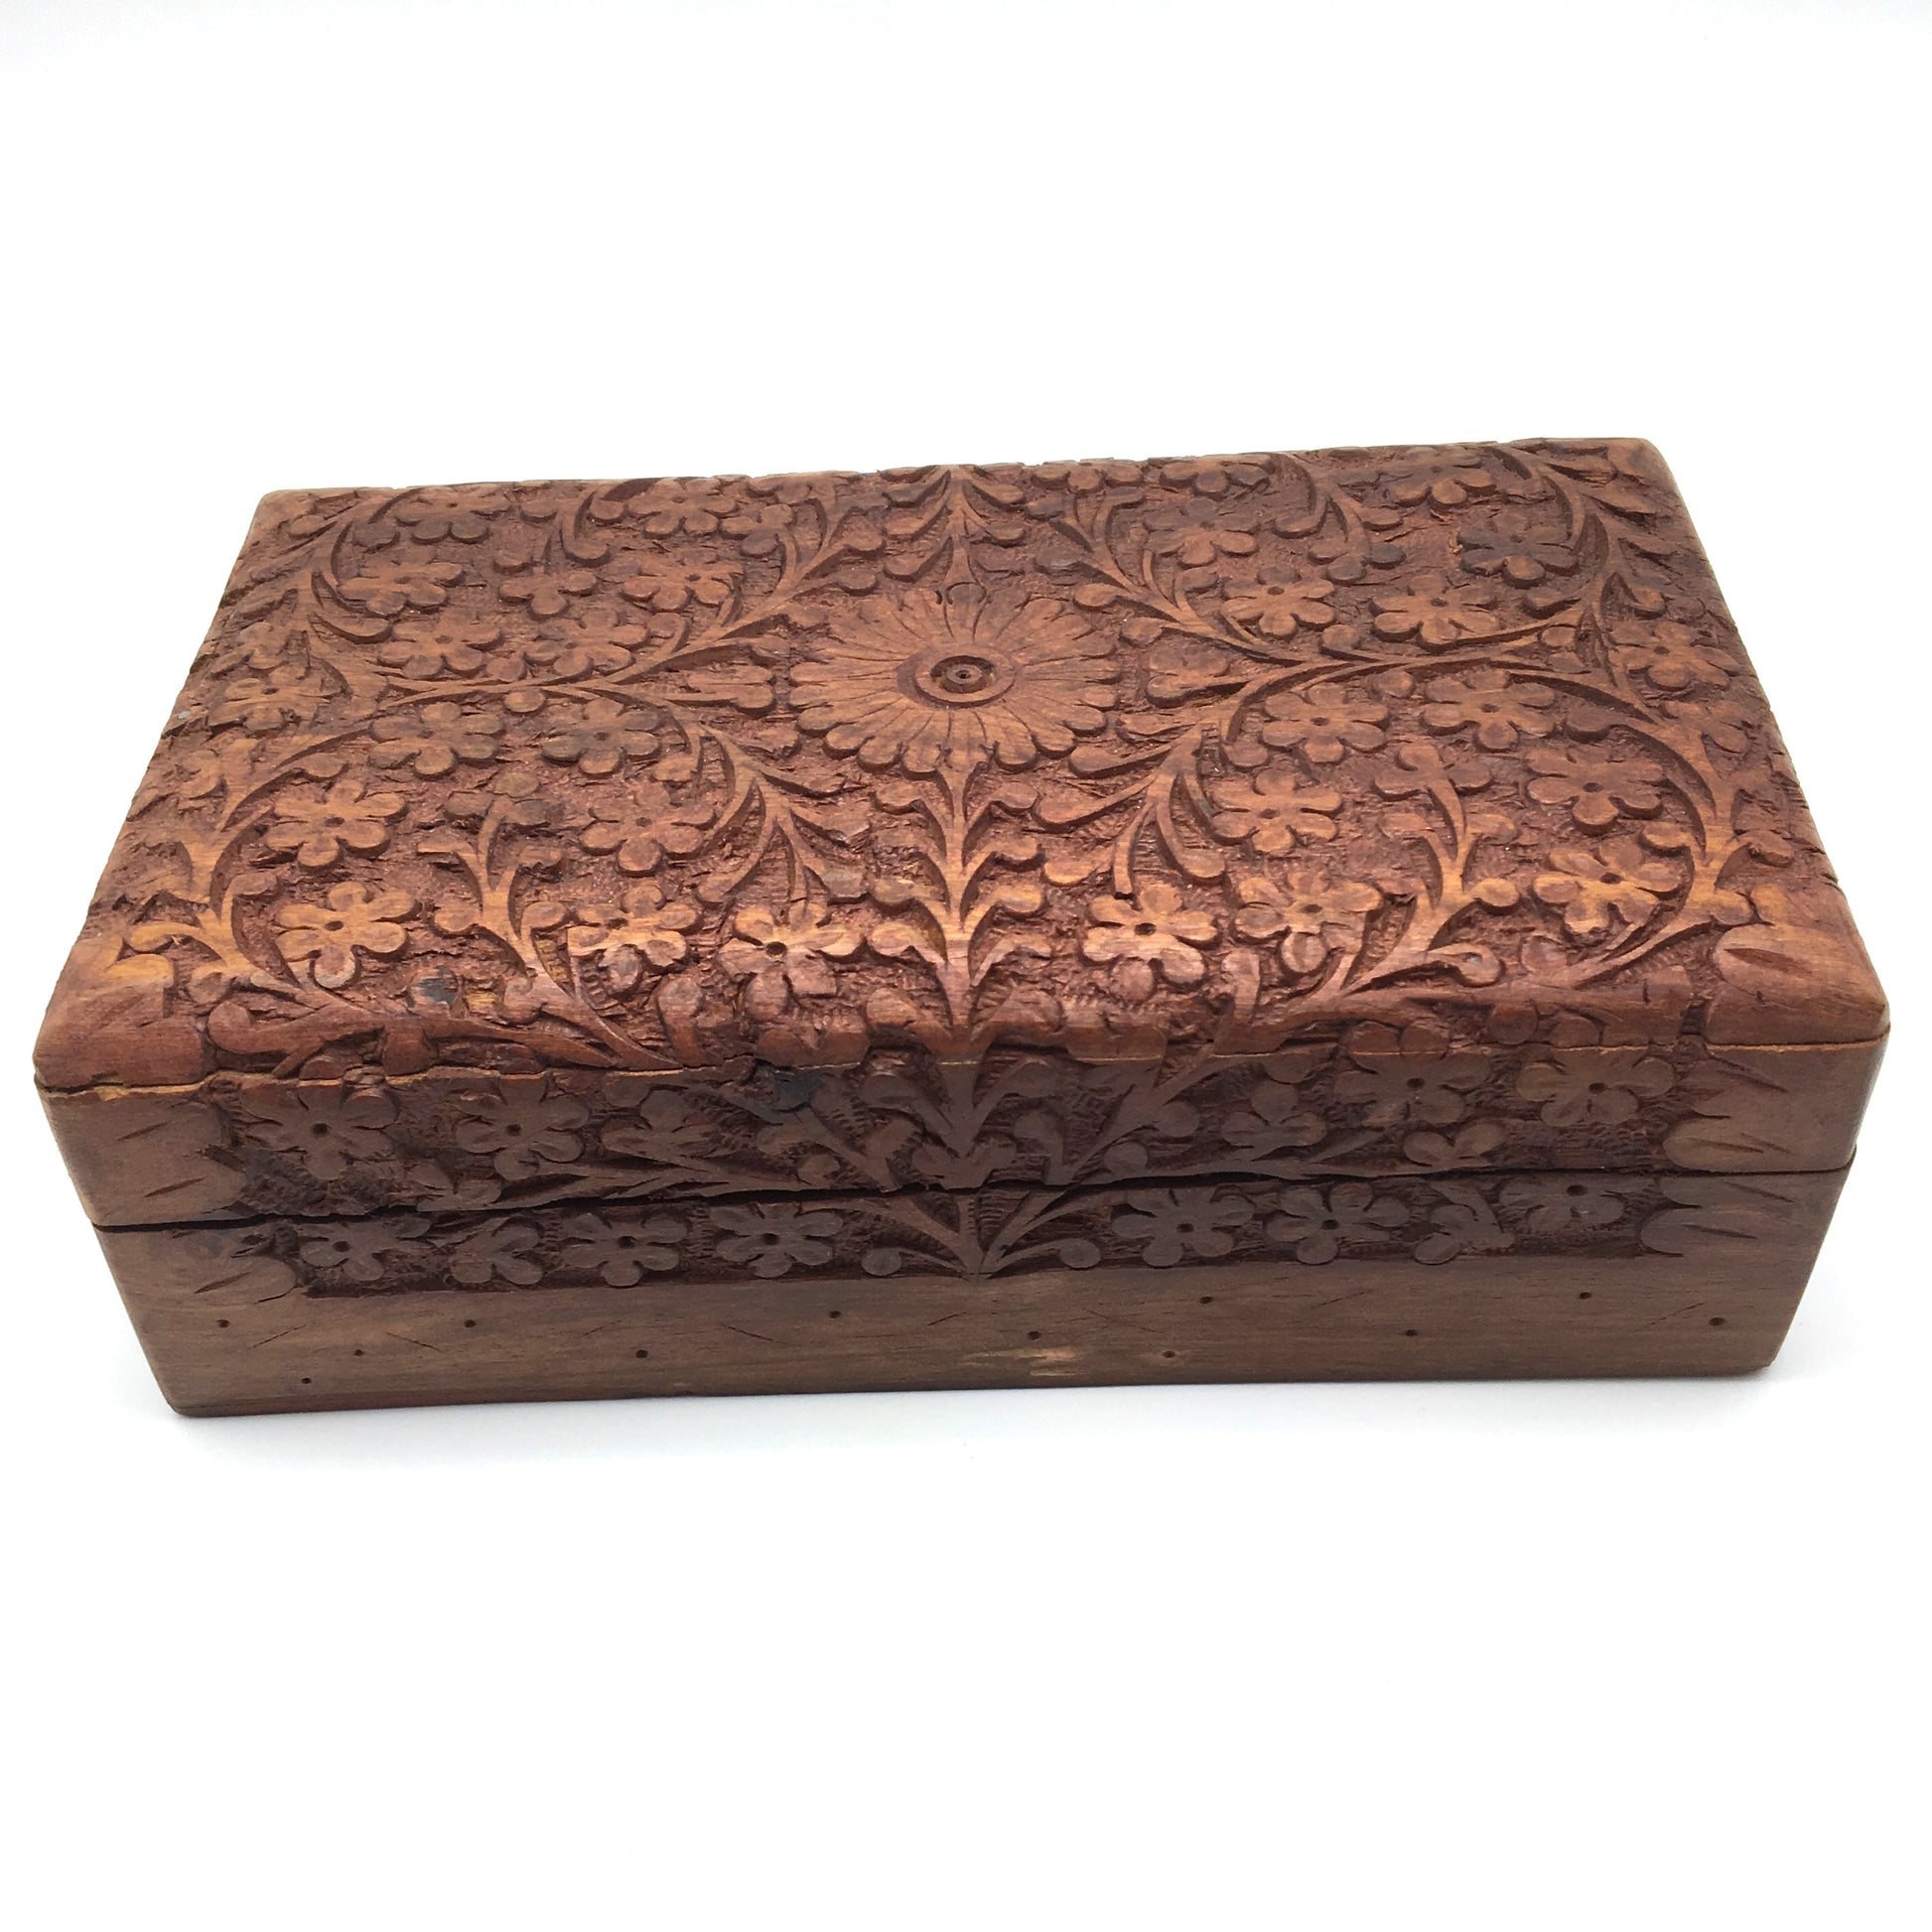 3-piece Hand-carved Decorative Wooden Jewelry Trinket Box Storage Organizer - Montecinos Ethnic